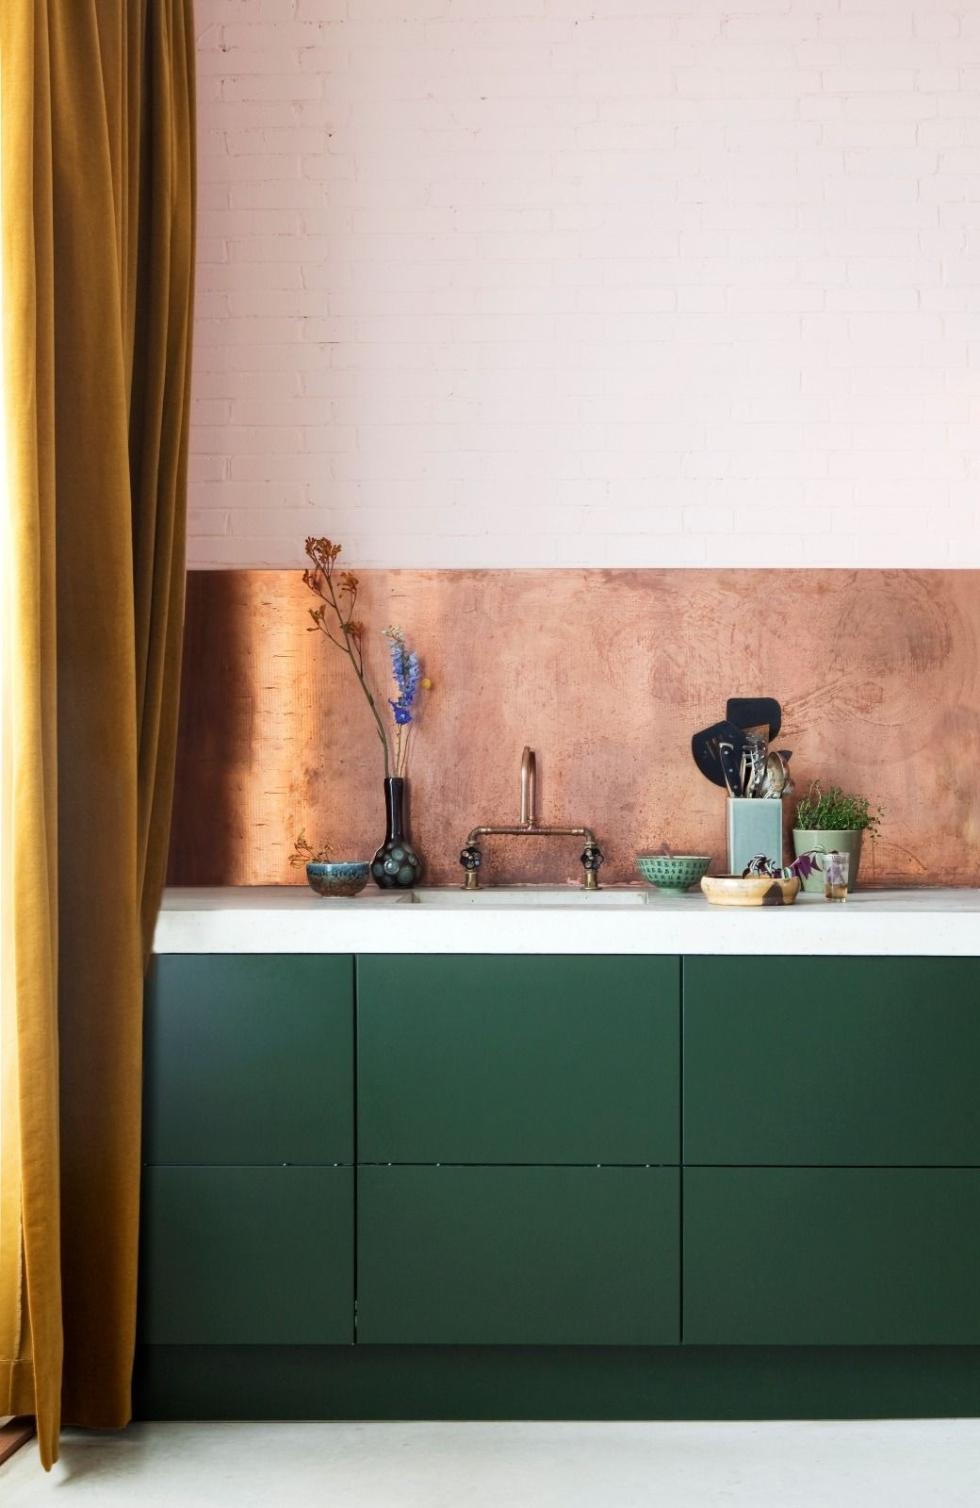 Groen keuken met koperen wandpaneel.jpg